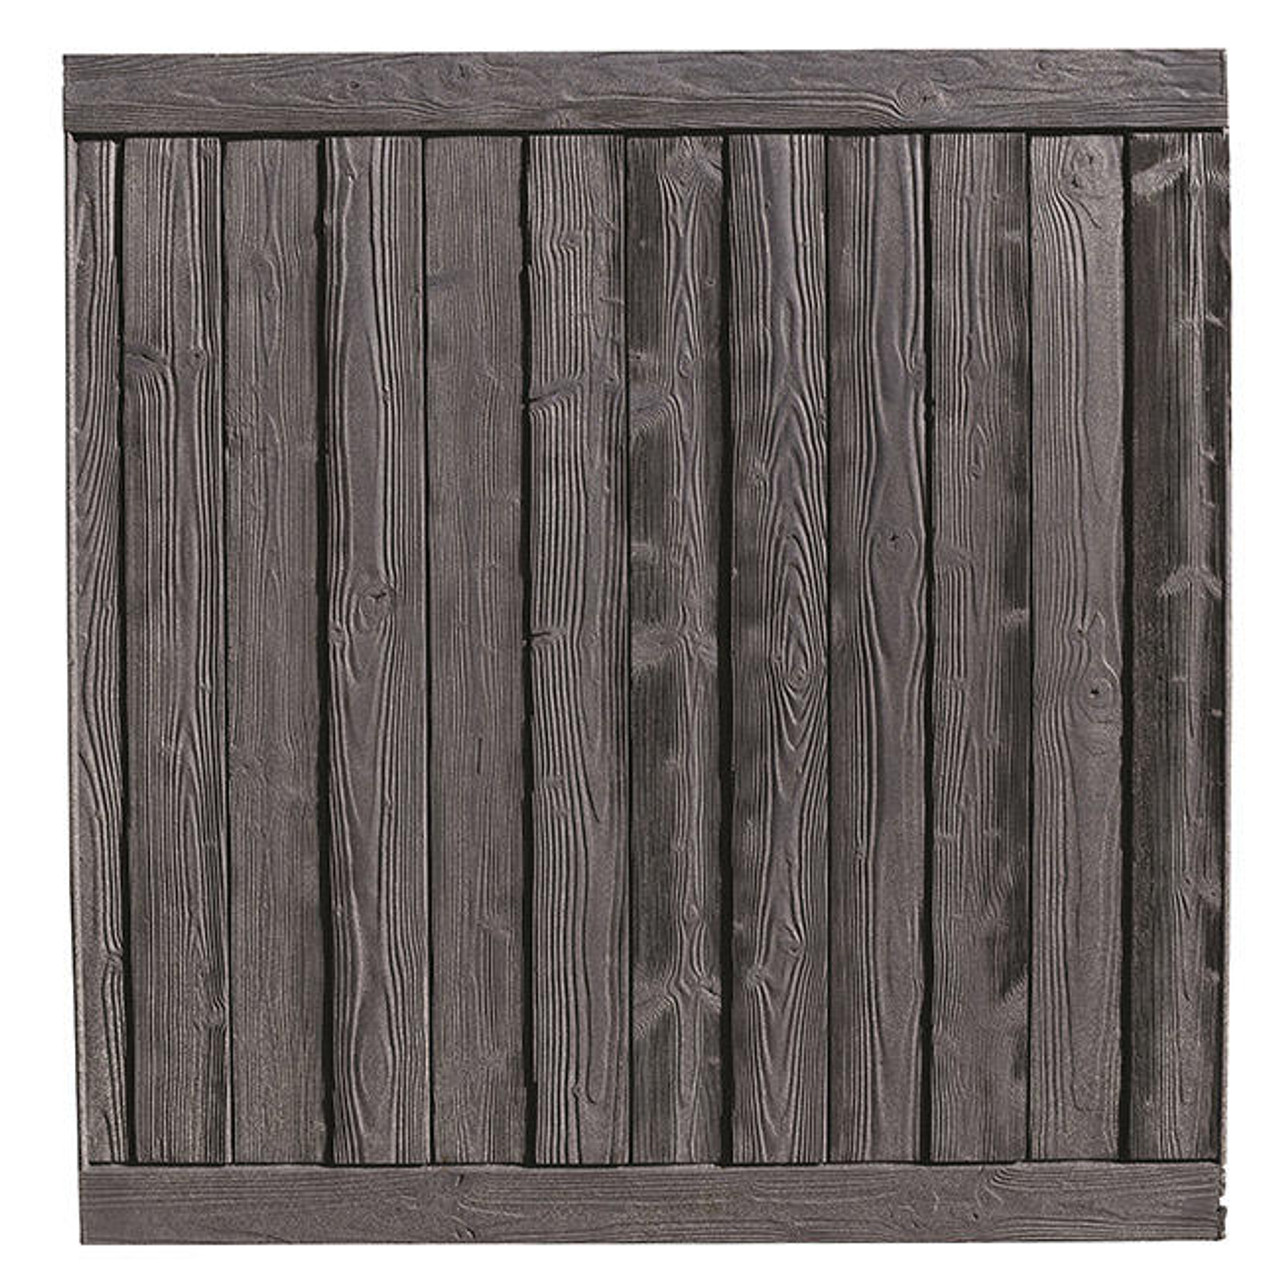 Bufftech Sherwood Fence Panel in Black Oak